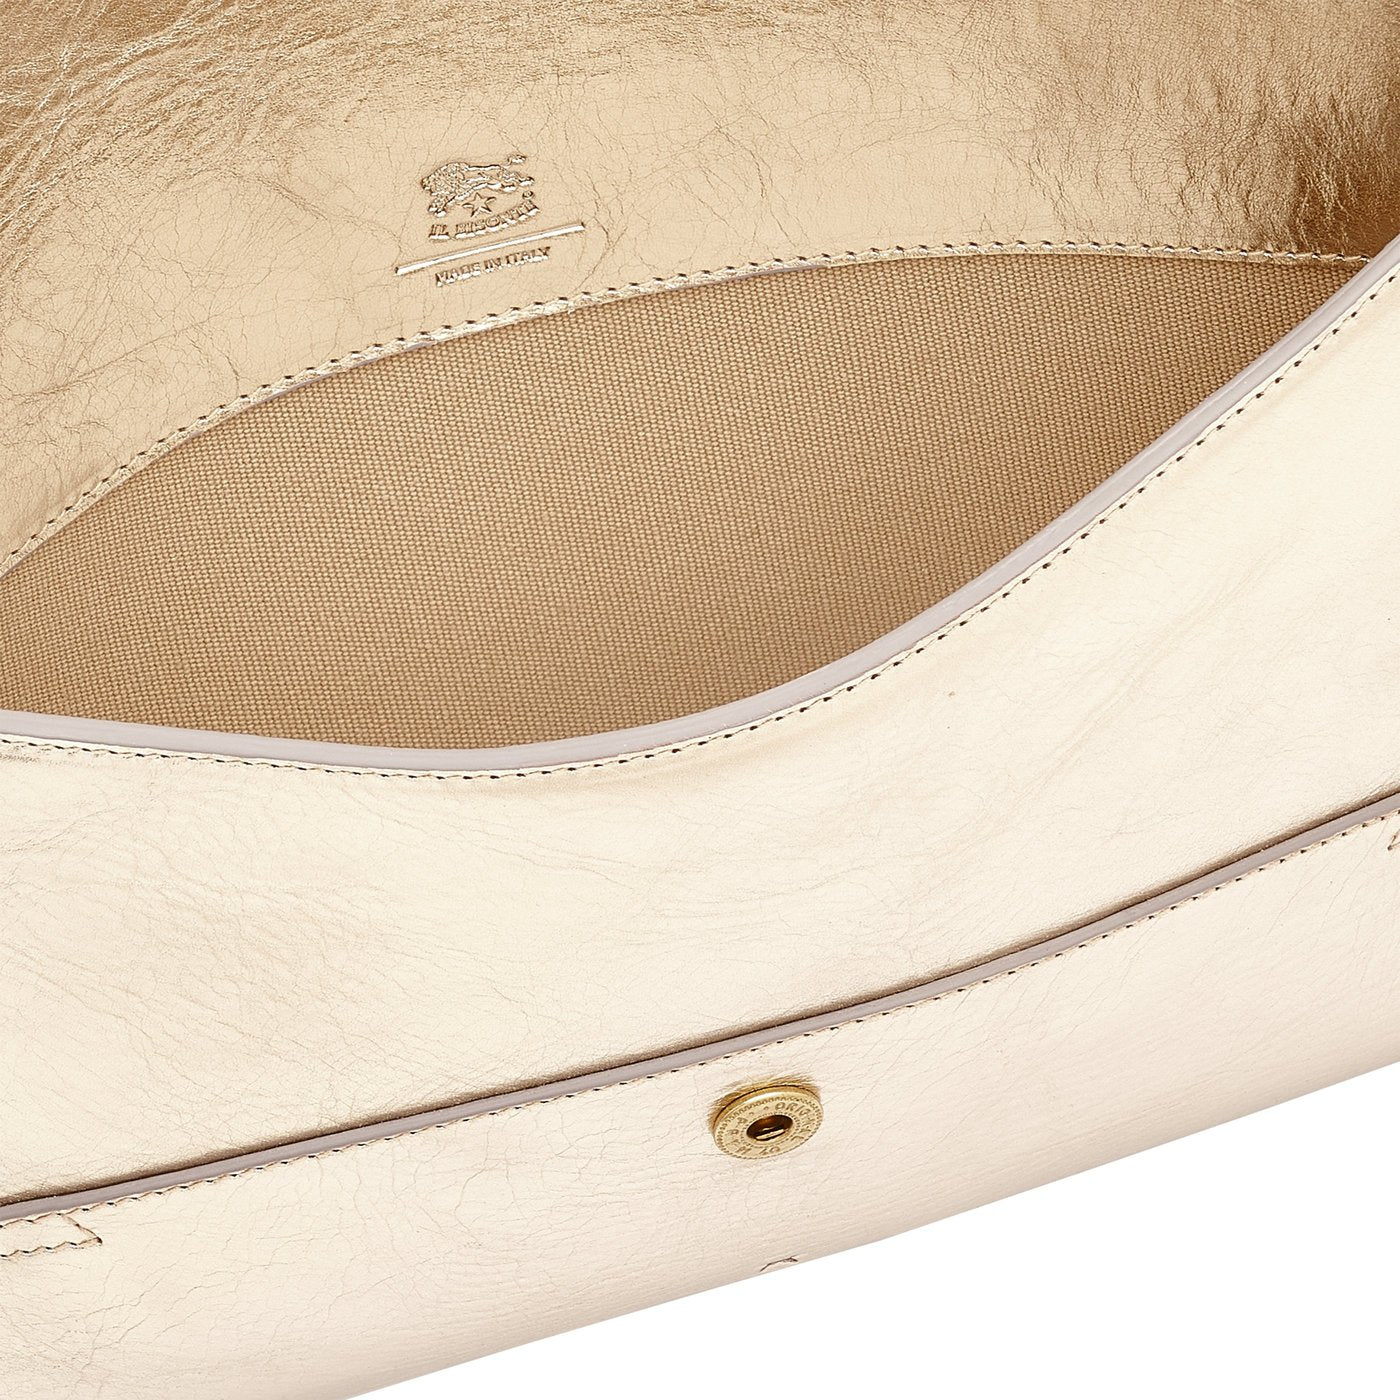 Esperia | Women's clutch bag in metallic leather color metallic platinum